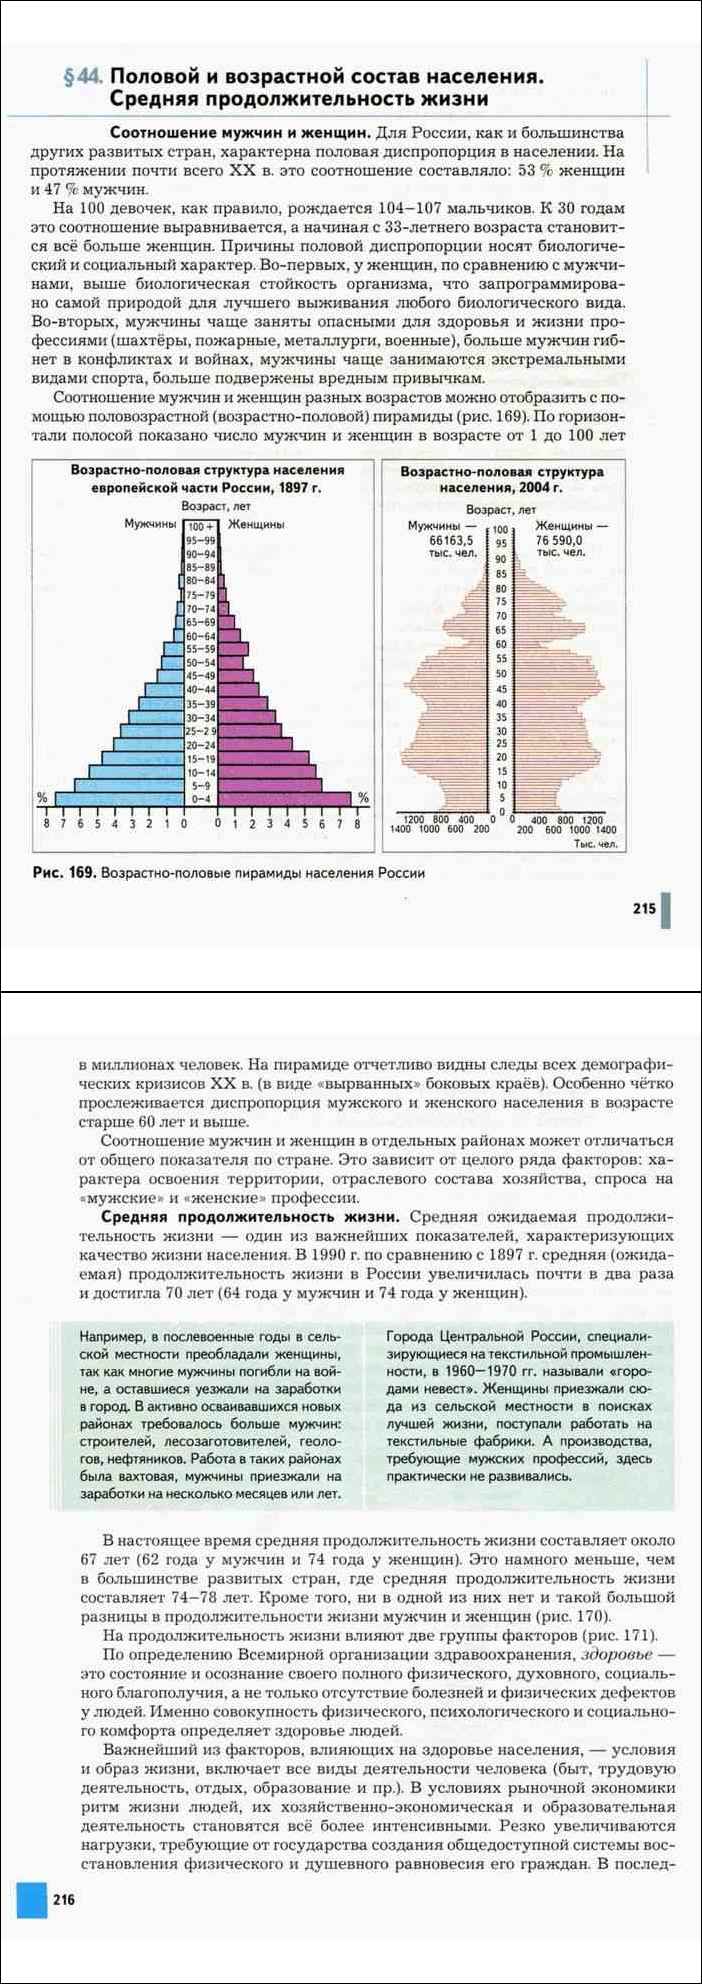 Какие различия по возрастному составу населения. Возрастно-половая пирамида населения России. Половозрастной состав населения России 8 класс география. Что такое Половозрастная пирамида в географии 8 класс. Половозрастная пирамида России по годам.